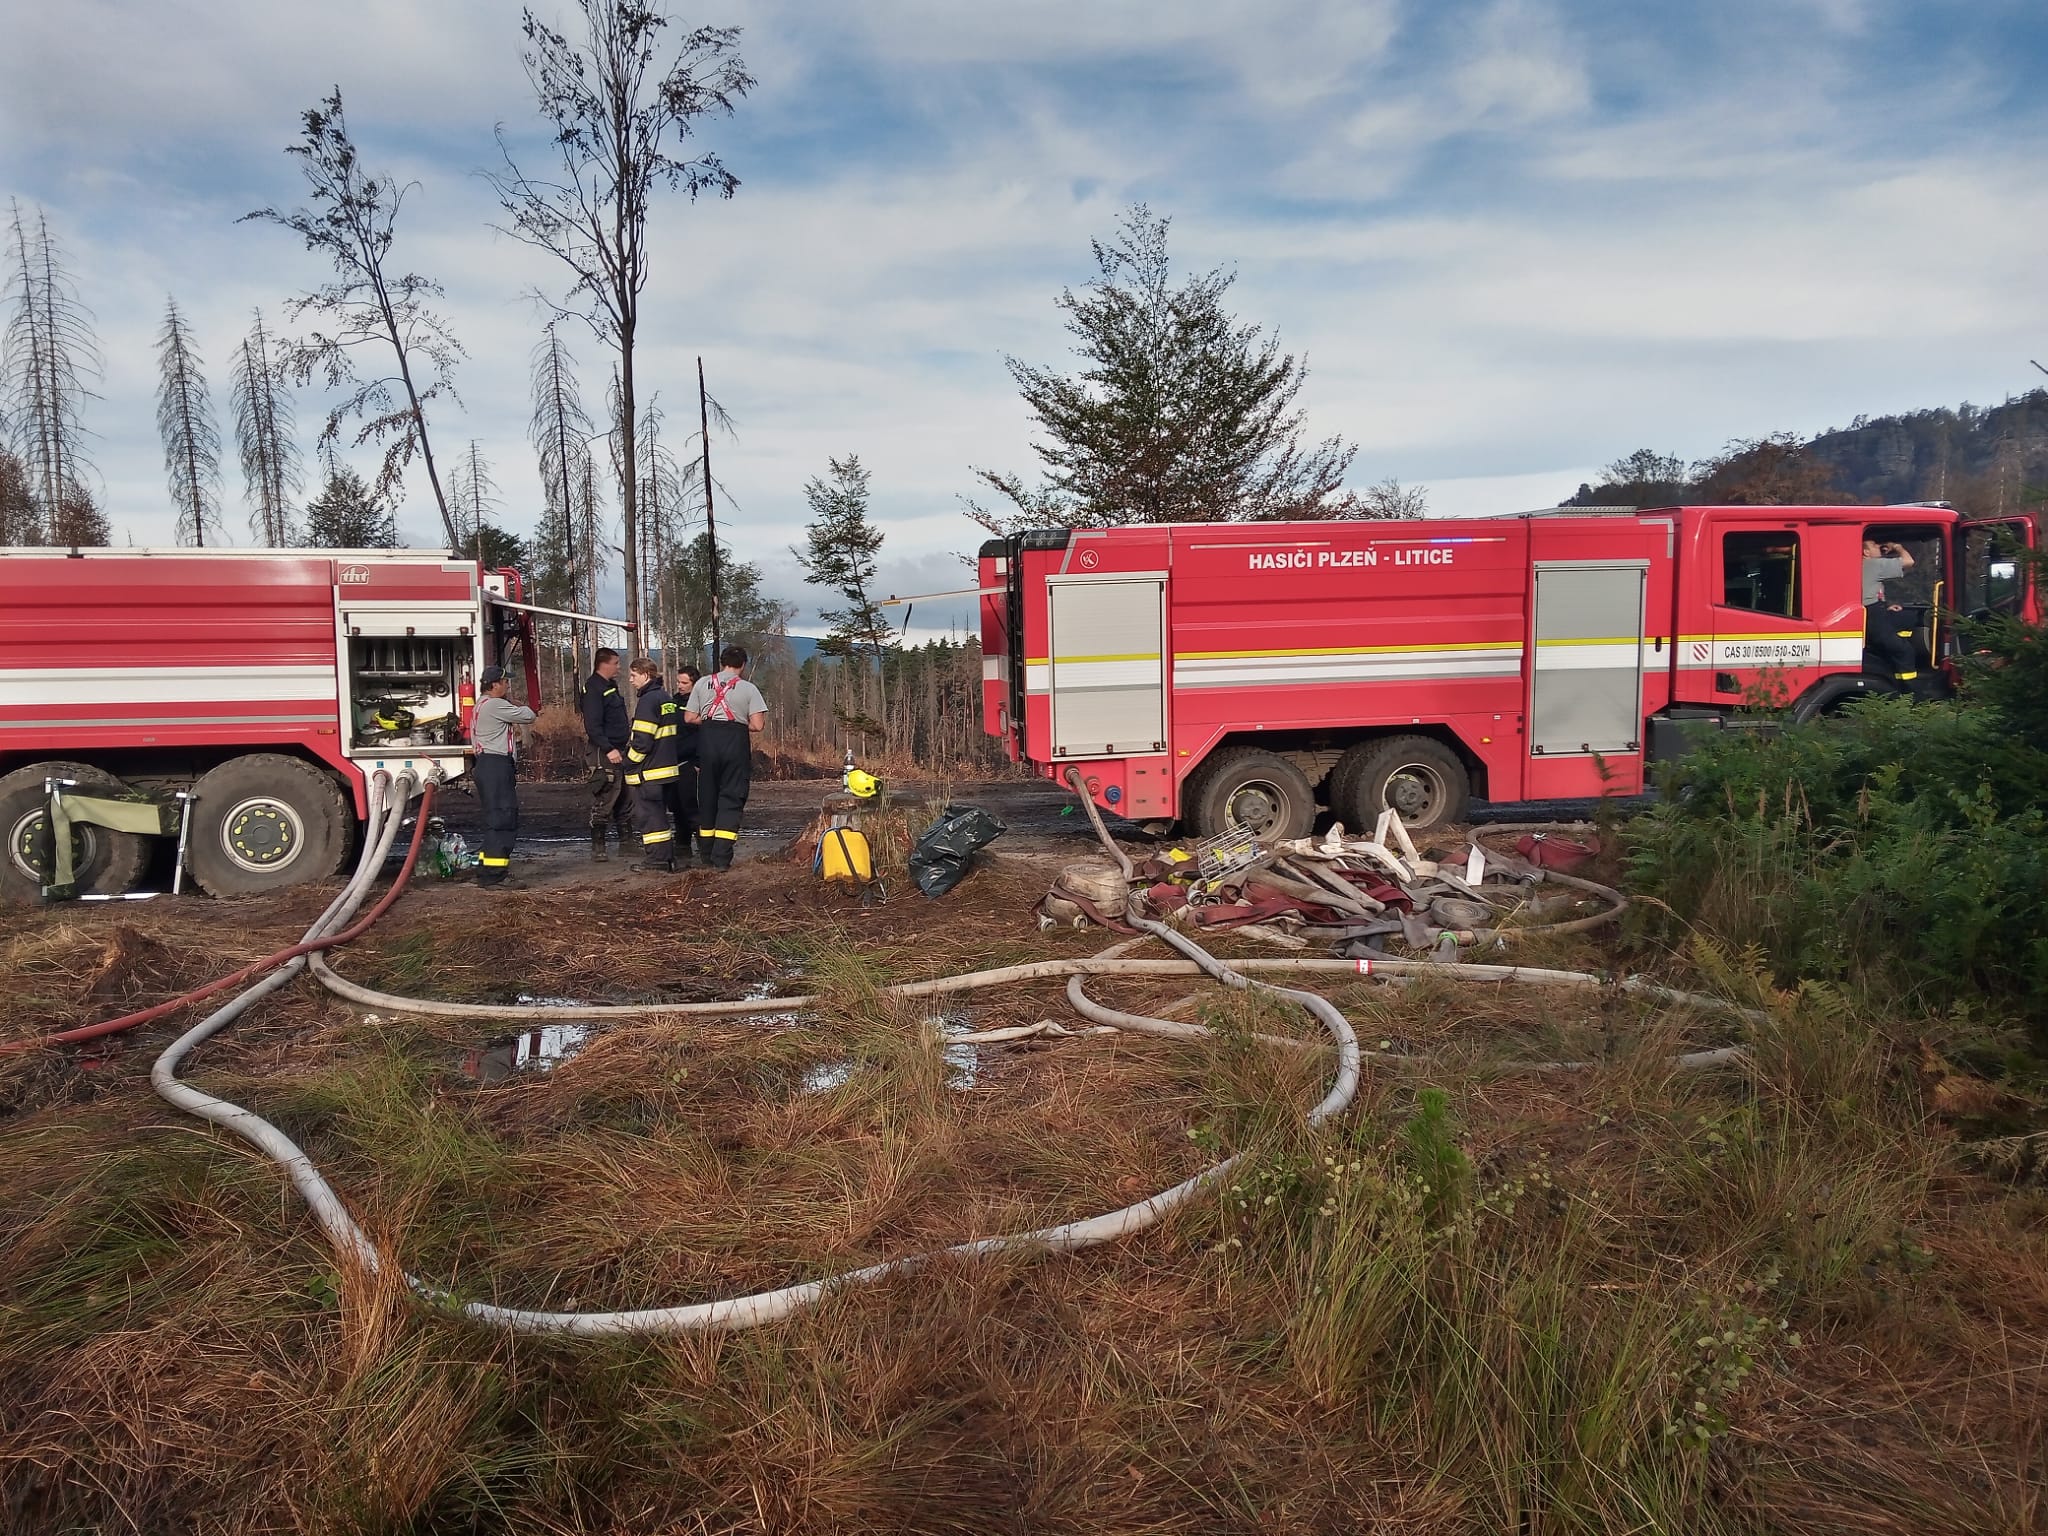 Plzeňští dobrovolní hasiči pomáhali v Hřensku. Museli si uhasit okolí penzionu, v němž byli ubytovaní